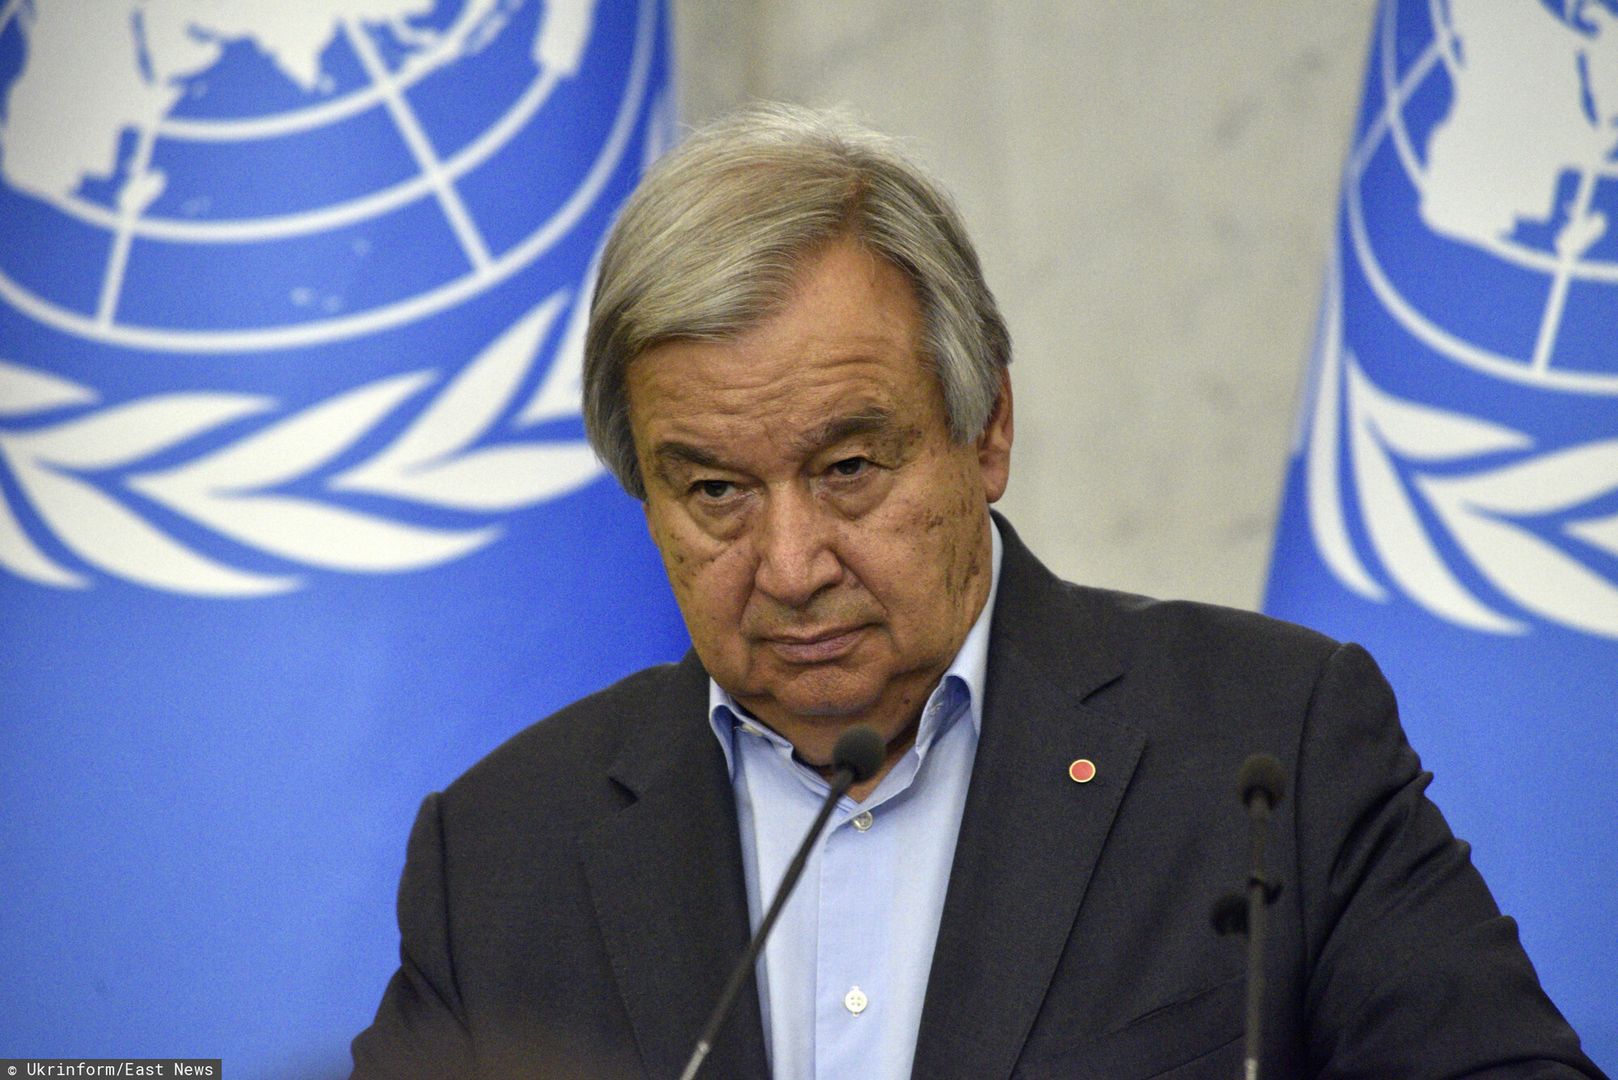 "Reakcja świata jest żałosna". Dramatyczny apel sekretarza generalnego ONZ